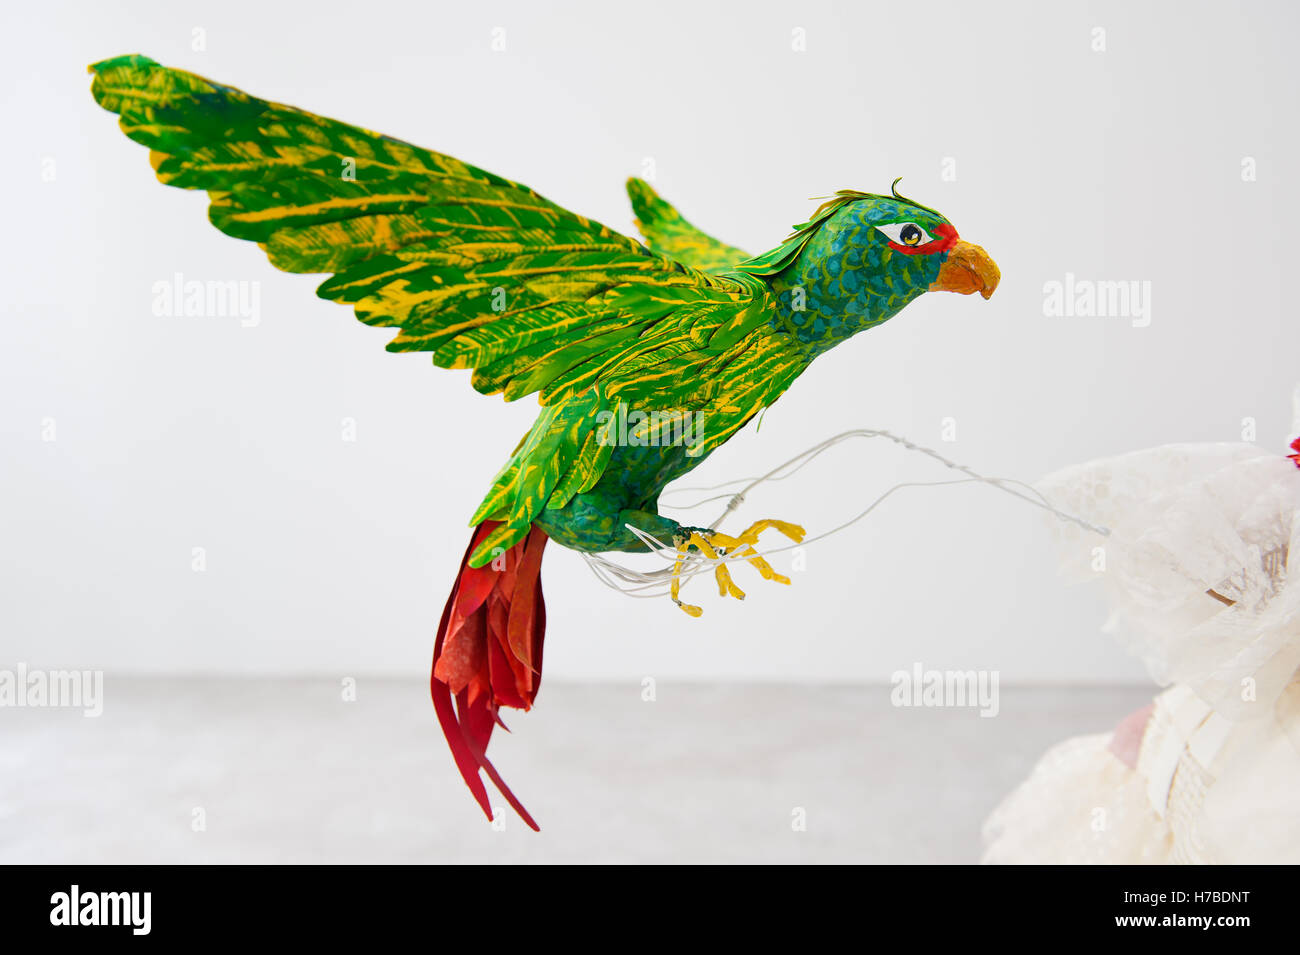 Colore verde brillante parrot fatta di carta di Isabelle de Borchgrave Foto Stock